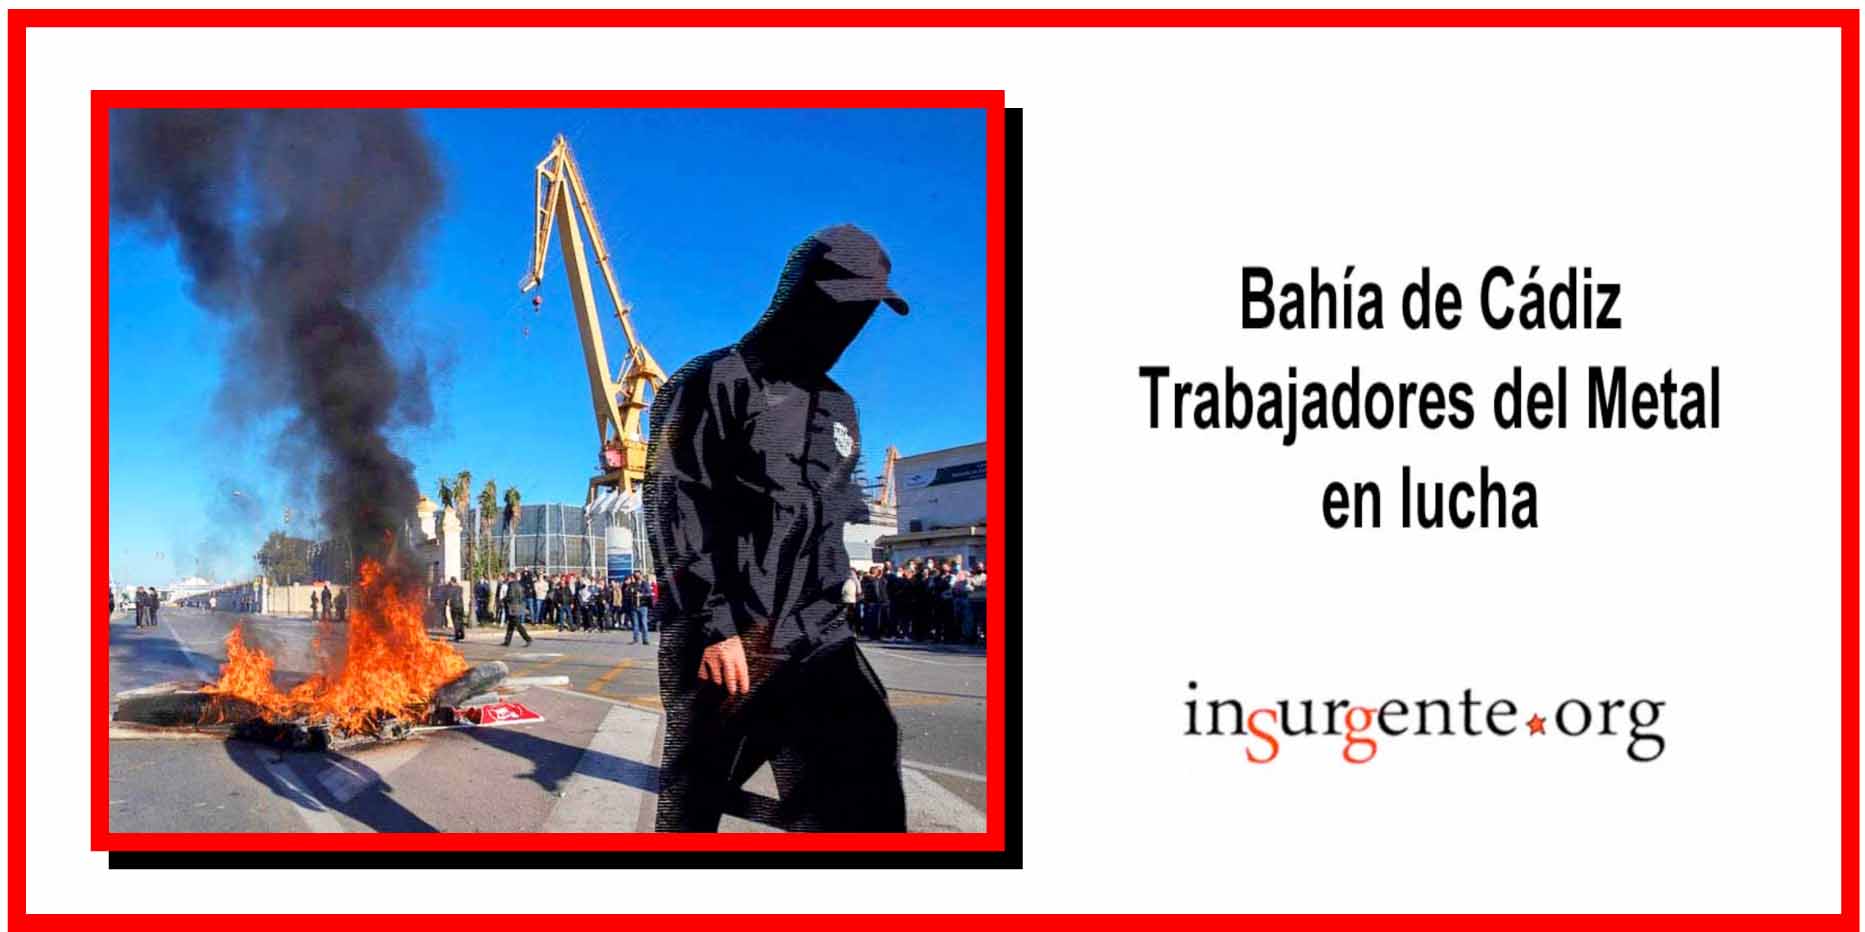 El gobierno progre envió a la Bahía de Cádiz más efectivos para reprimir a los trabajadores. Hubo tanquetas, cargas policiales y enfrentamientos (vídeos)